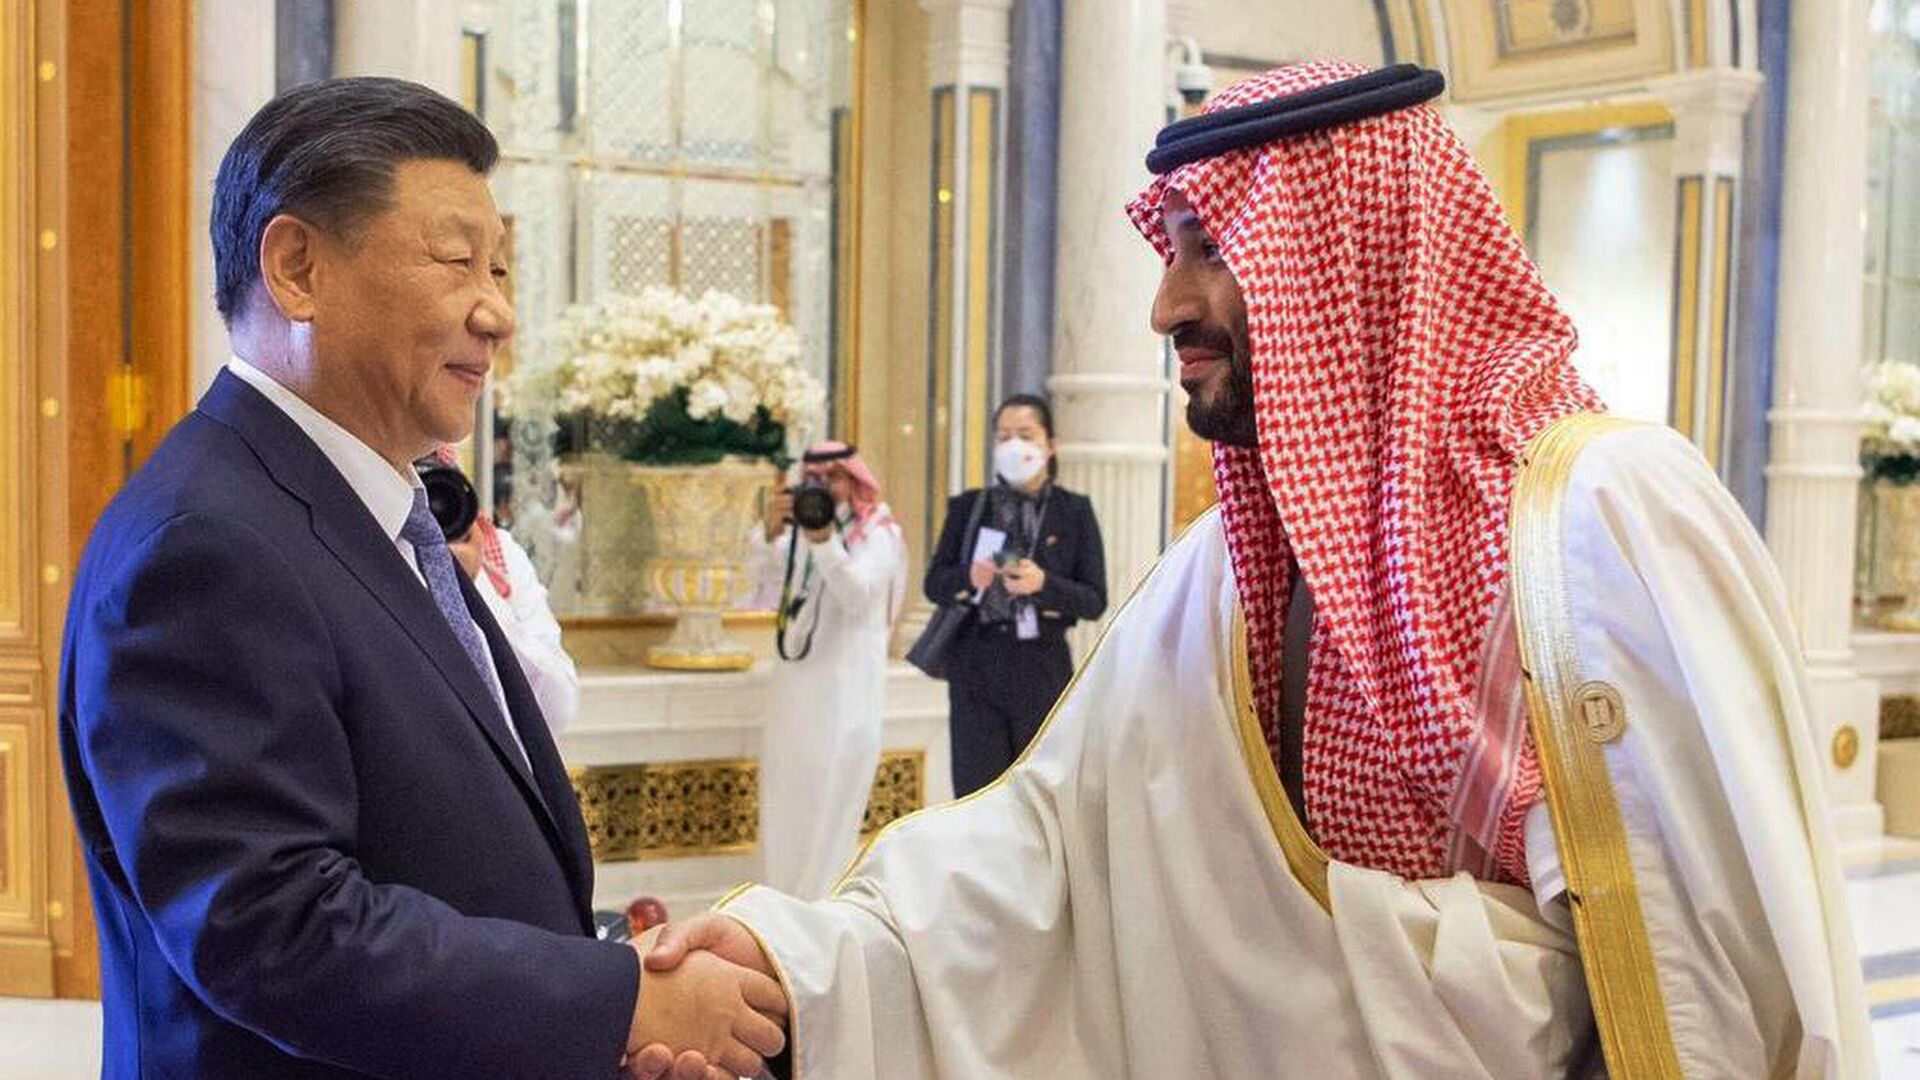 Председатель КНР Си Цзиньпин и наследный принц Саудовской Аравии Мухаммед бен Салман во время встречи в Эр-Рияде. 9 декабря 2022 года - ИноСМИ, 1920, 14.03.2023